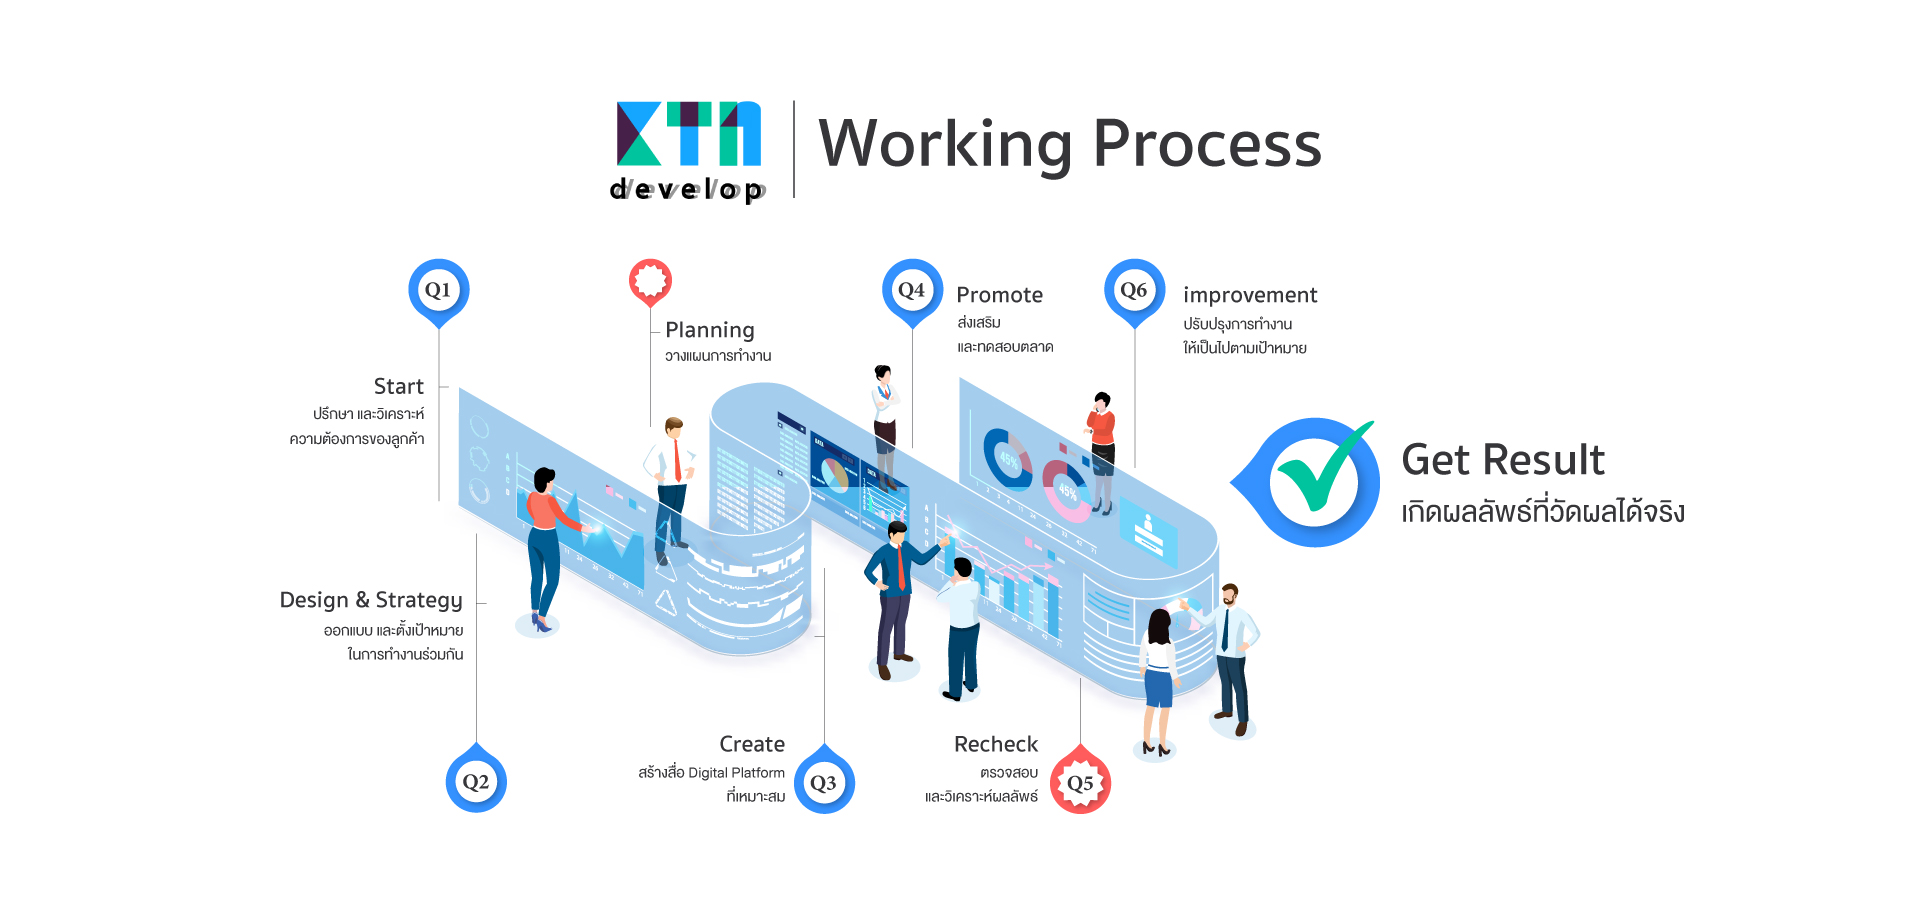 ขั้นตอนการออกแบบเว็บไซต์ของ KTn Develop และขั้นตอนการสร้างเว็บไซต์